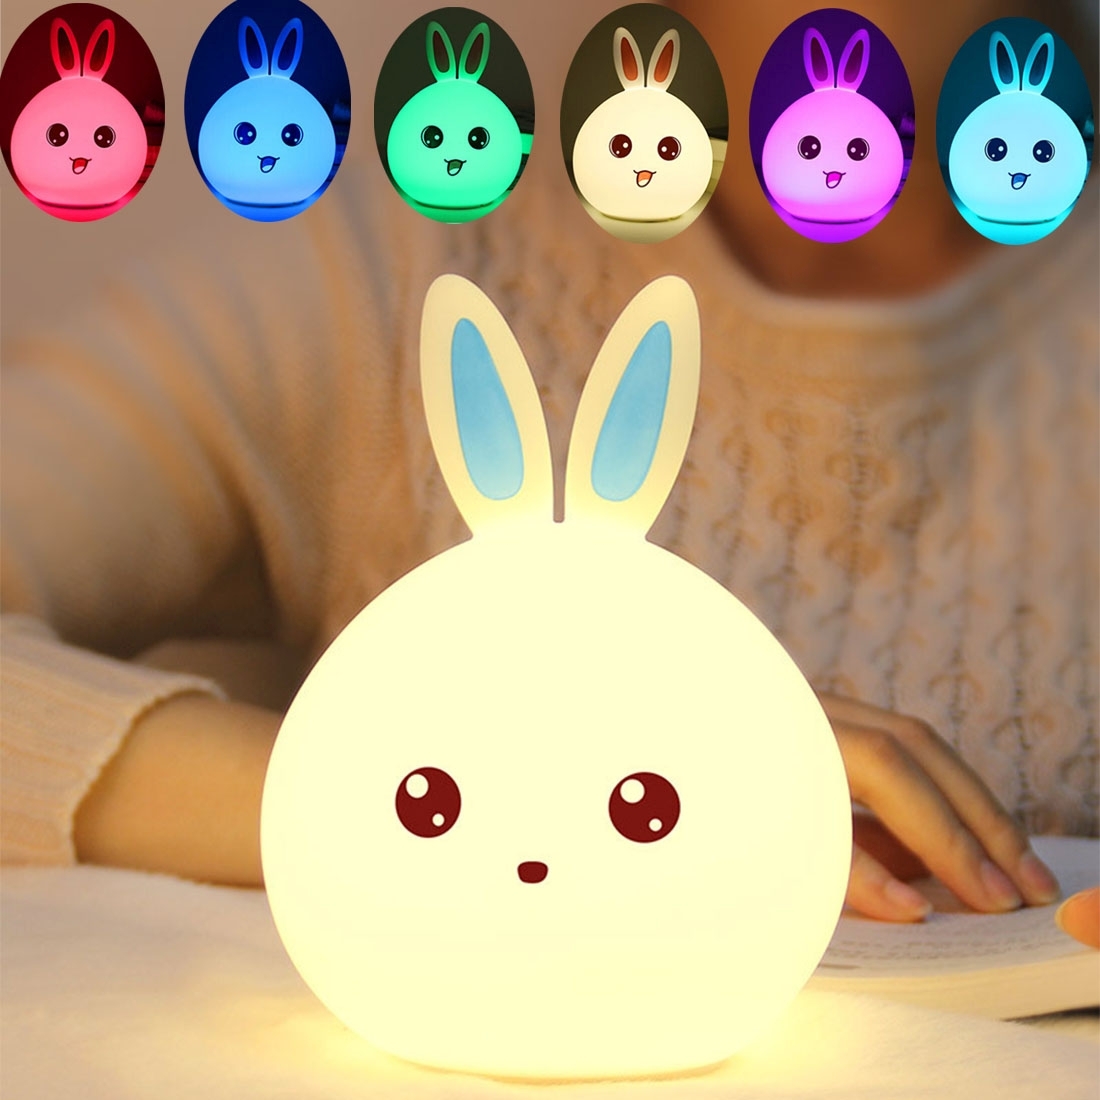 Kögler Soft Hasen 12 x 14,5 cm groß bunt Lampe aus Silikon ca ideal fürs Kinderzimmer oder als Nachtlicht einfache Touchsteuerung weiß mit Farbwechsel Funktion batteriebetrieben